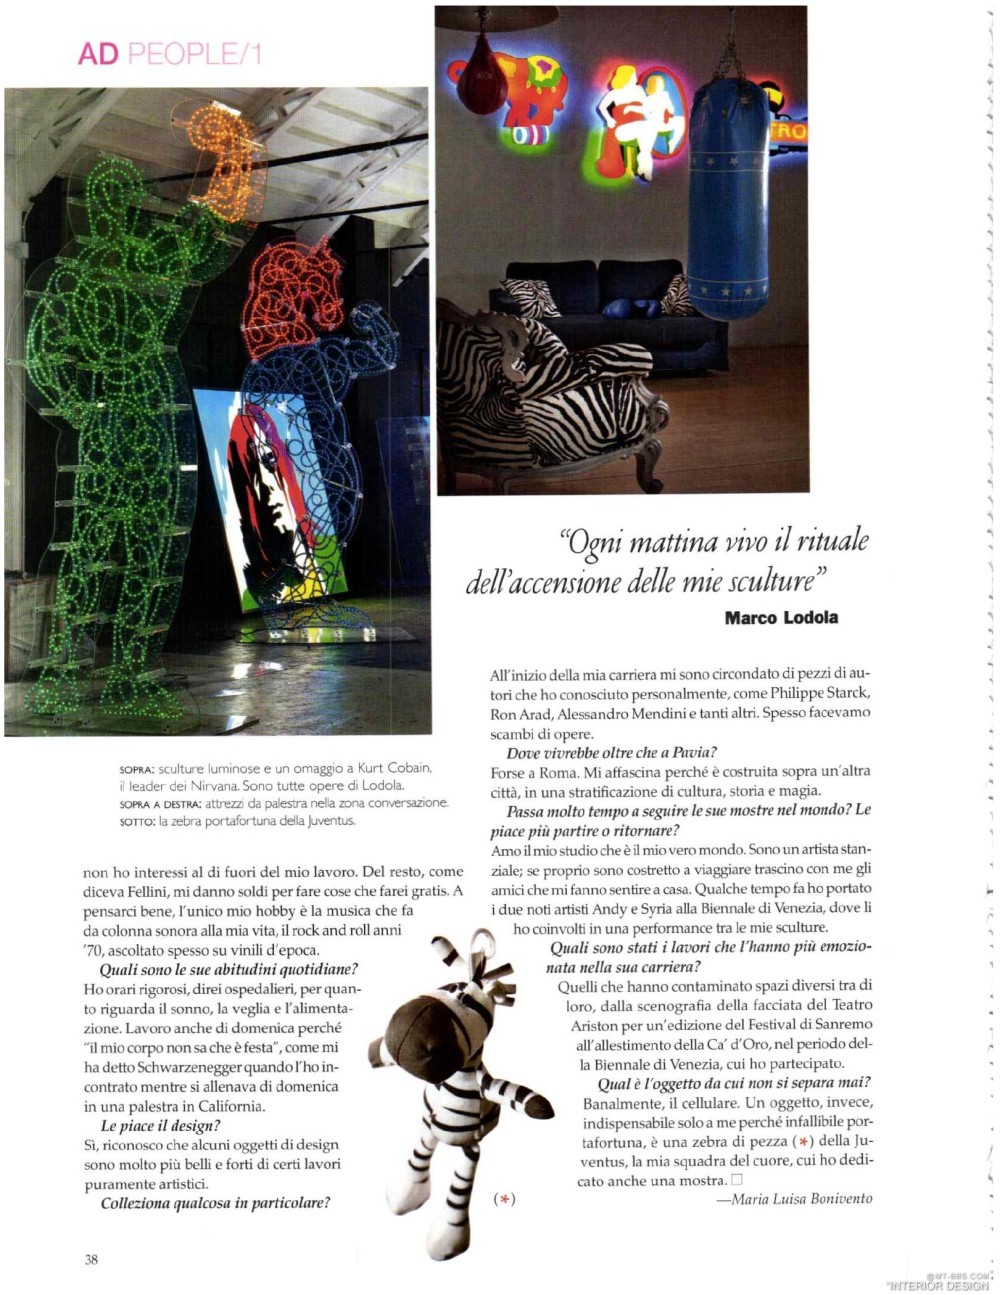 意大利AD 杂志 2012年全年JPG高清版本 全免（上传完毕）_0040.jpg